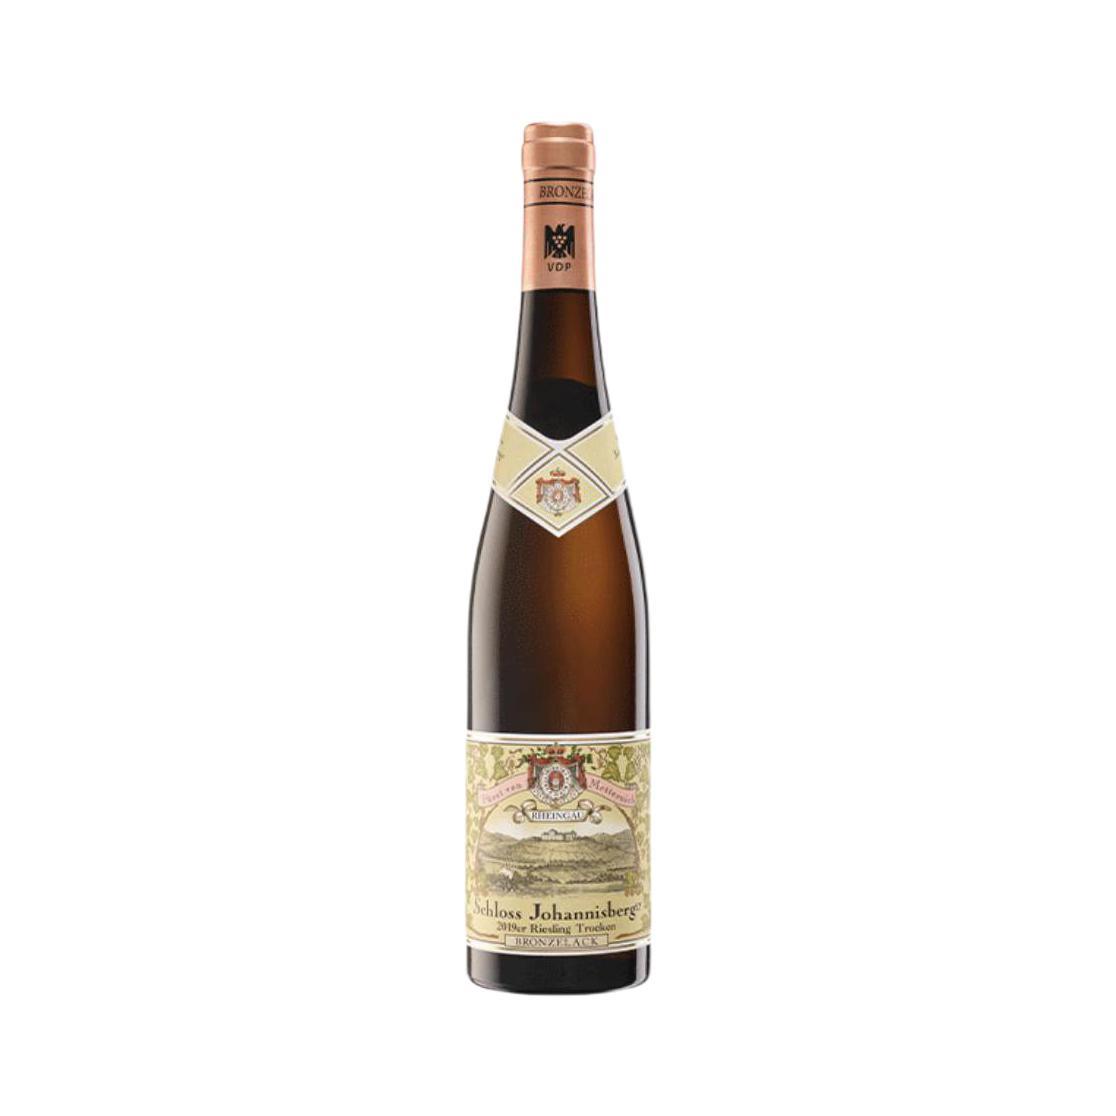 Weingut Schloss Johannisberg 约翰山堡酒庄 约翰山堡酒庄莱茵高雷司令铜标干型白葡萄酒 2019年